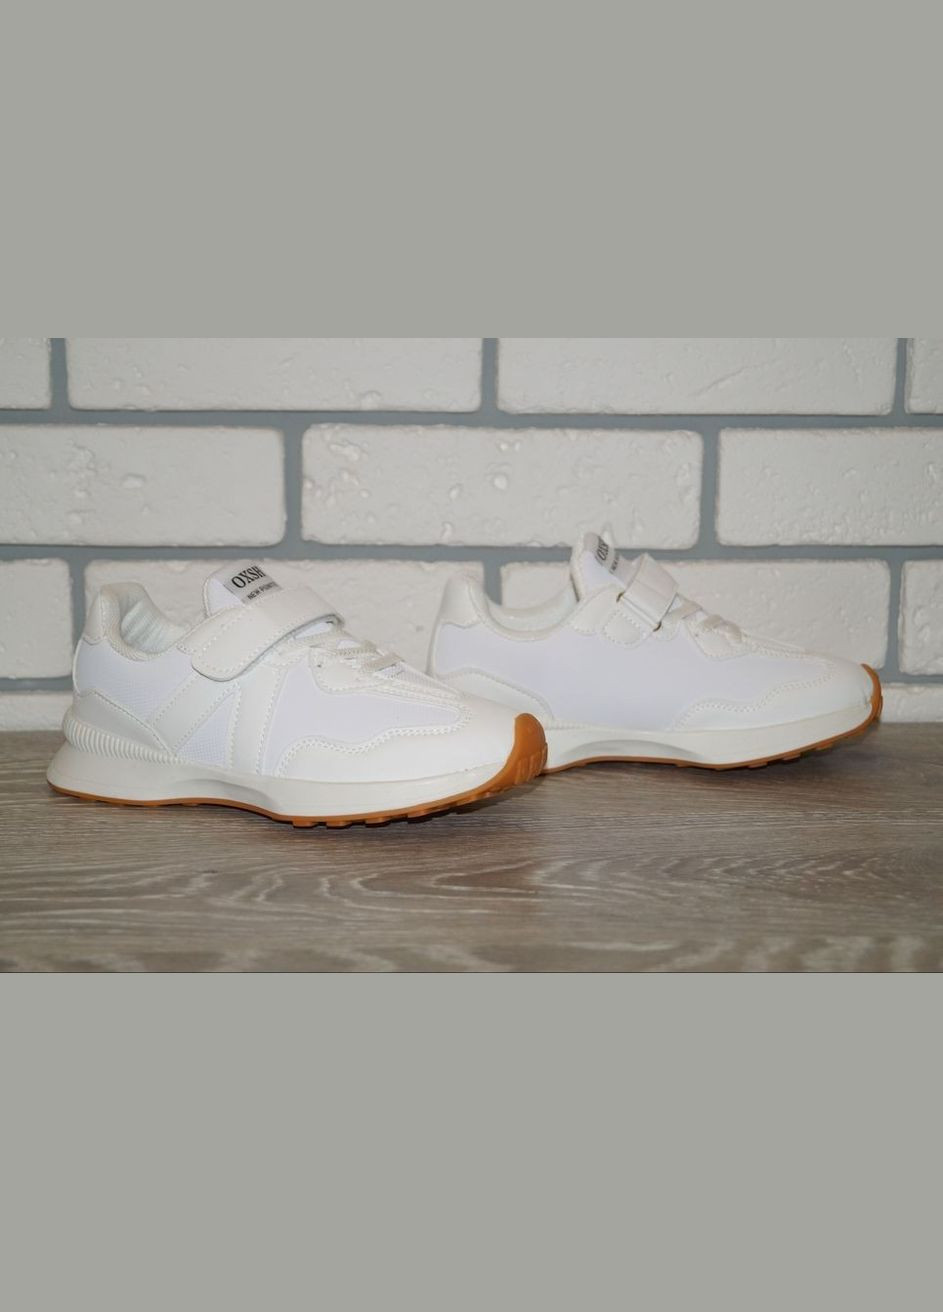 Белые демисезонные кроссовки демисезонные для мальчиков белые YTOP JY329-1